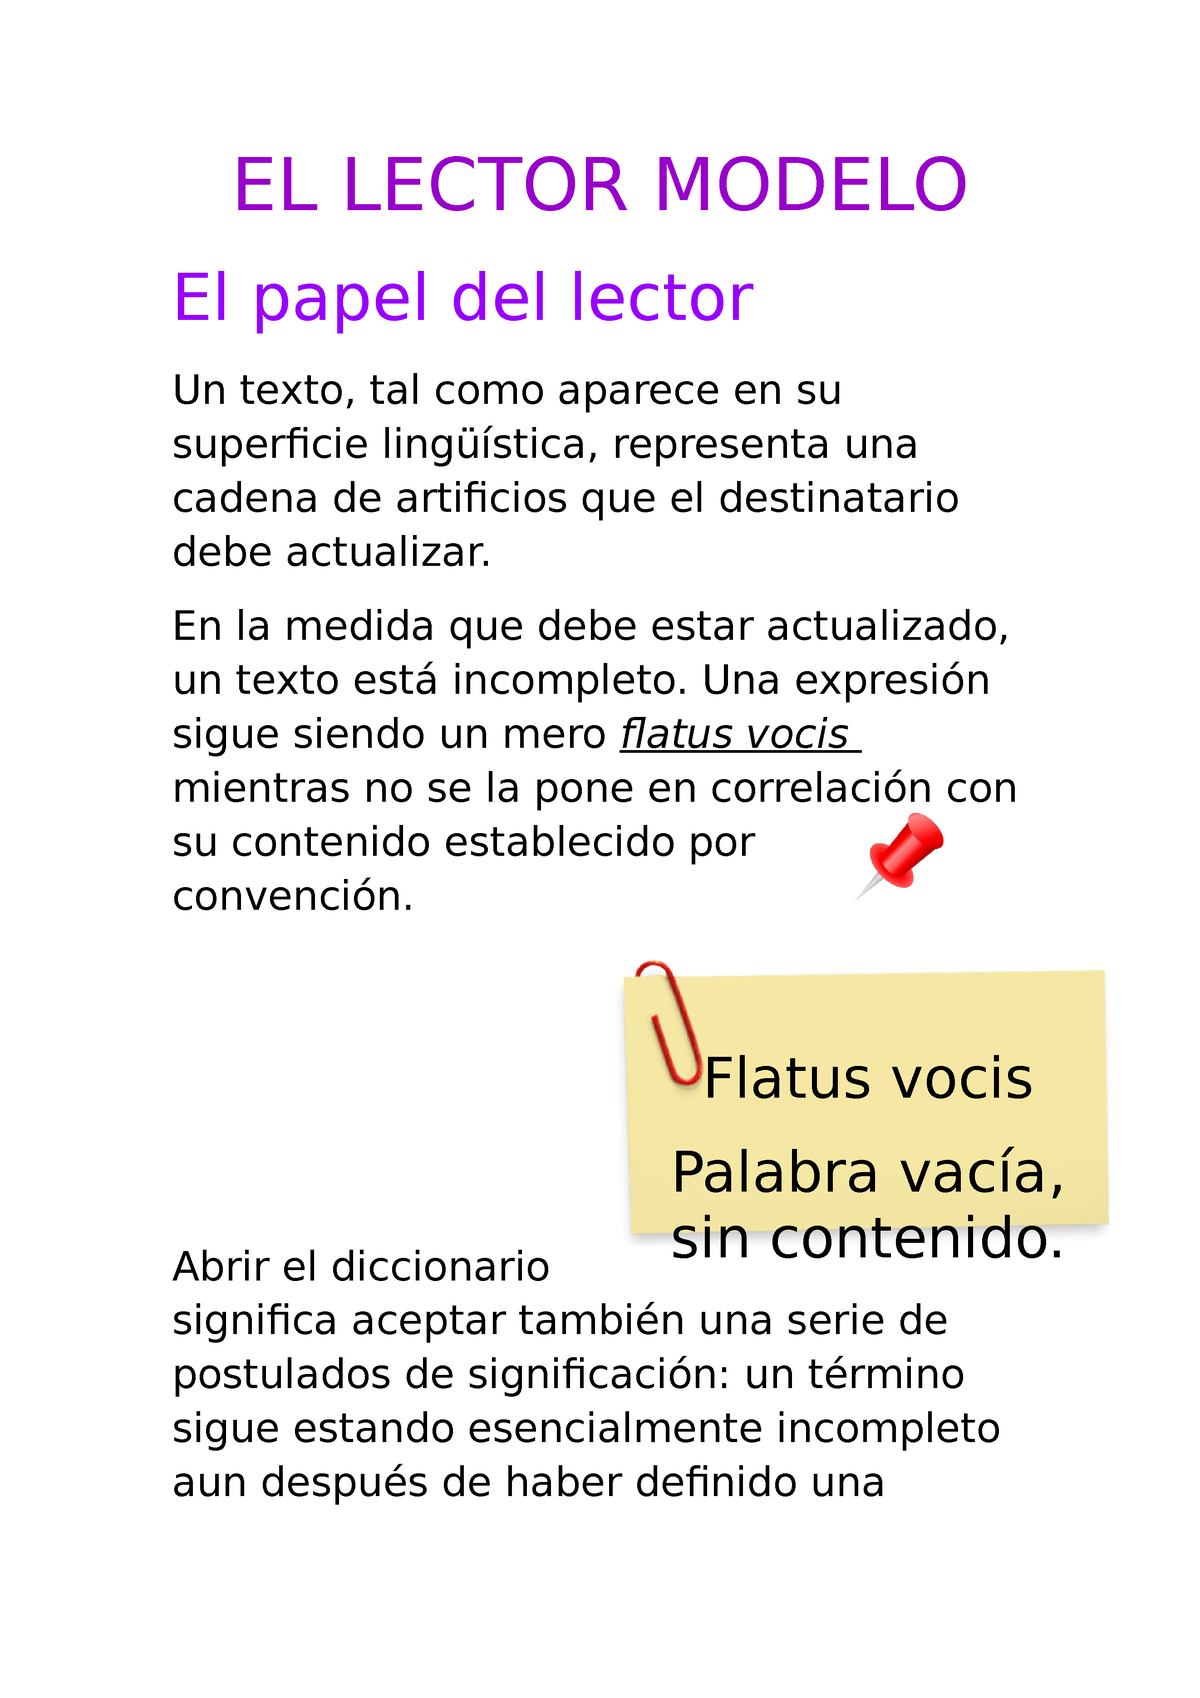 El Lector Modelo, de Umberto Eco - Comunicación I - UBA - Studocu